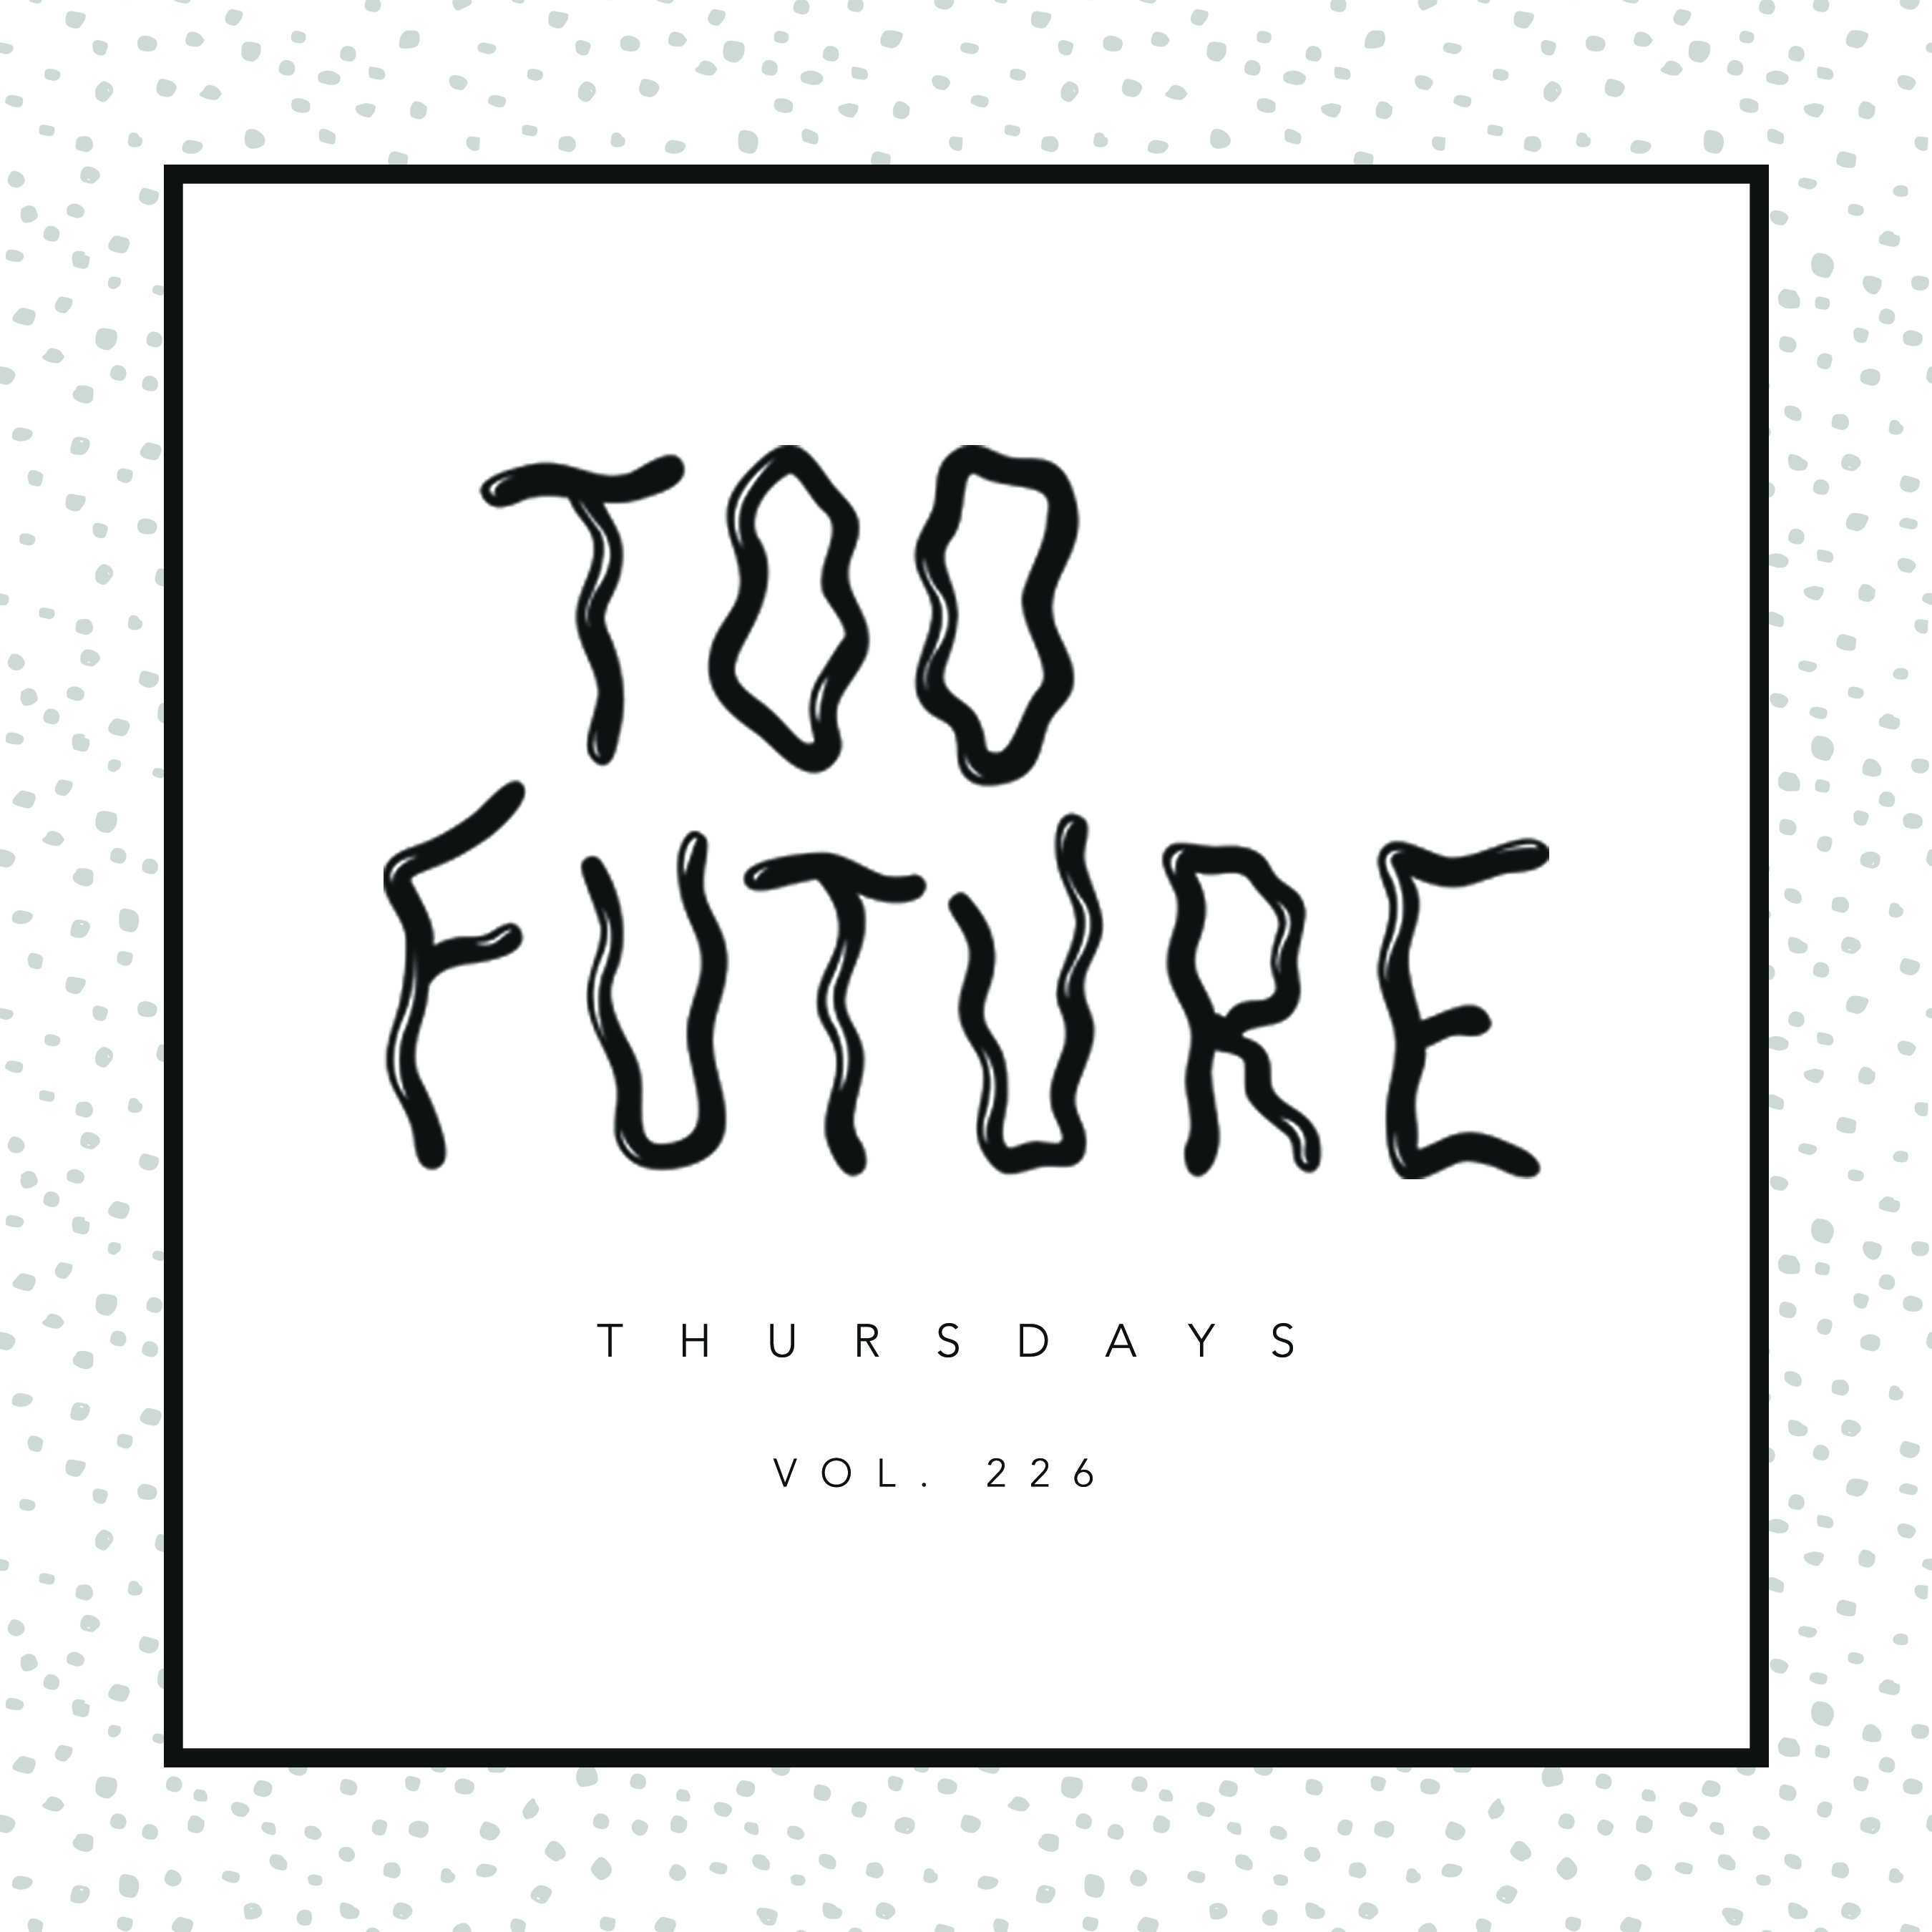 too-future-thursdays-vol-226